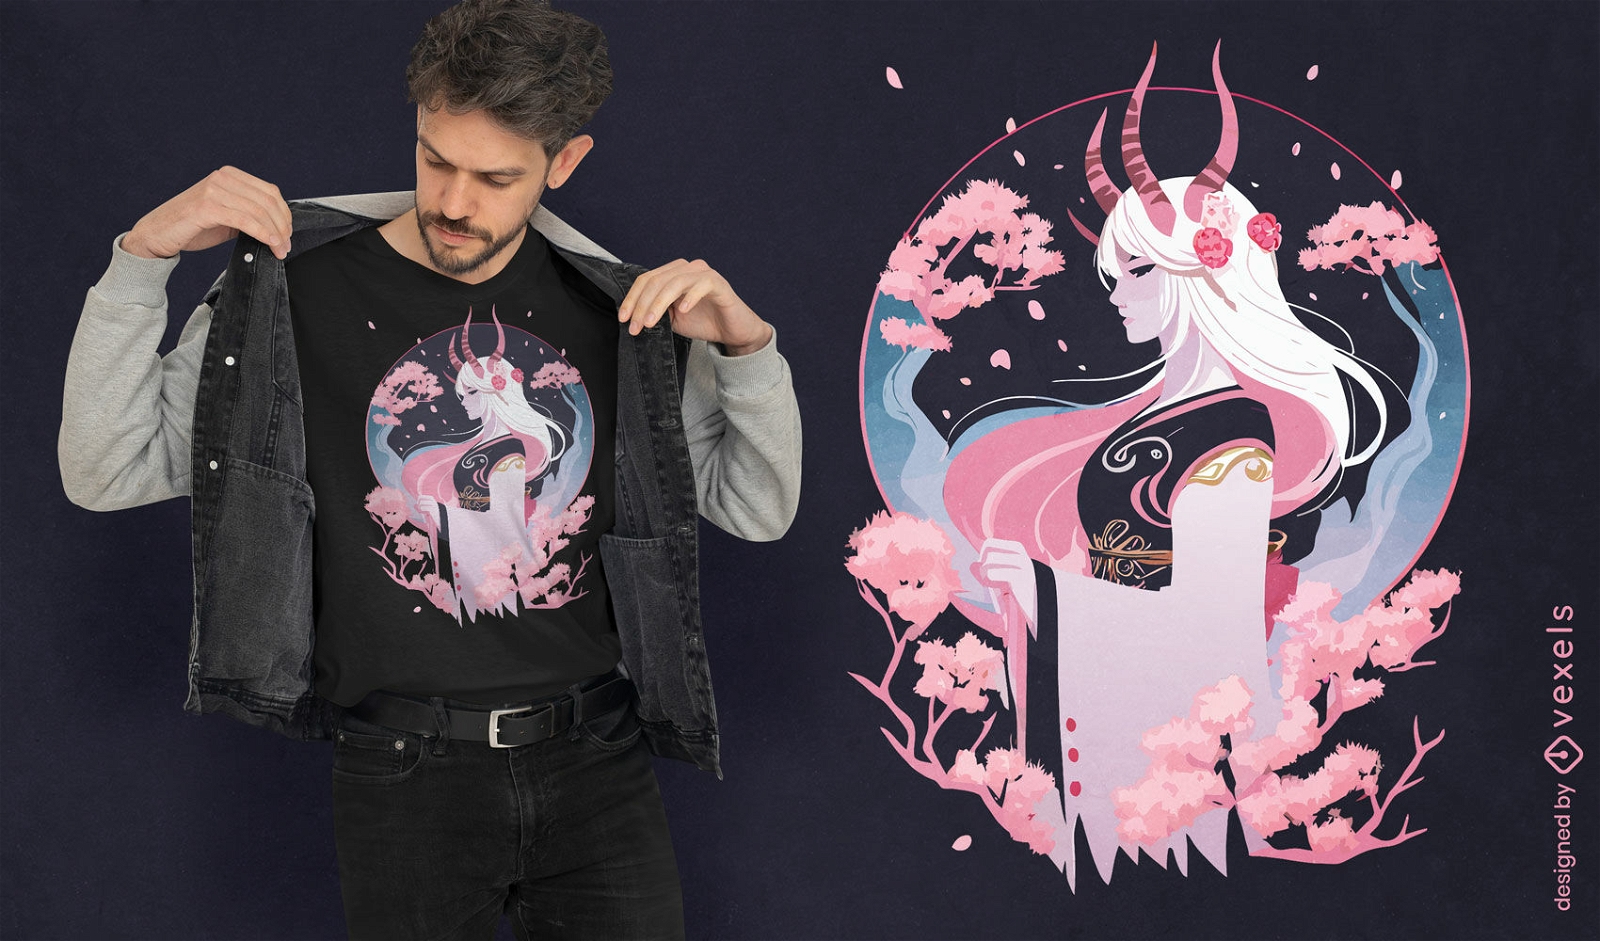 Demon japanese fantasy girl t-shirt design